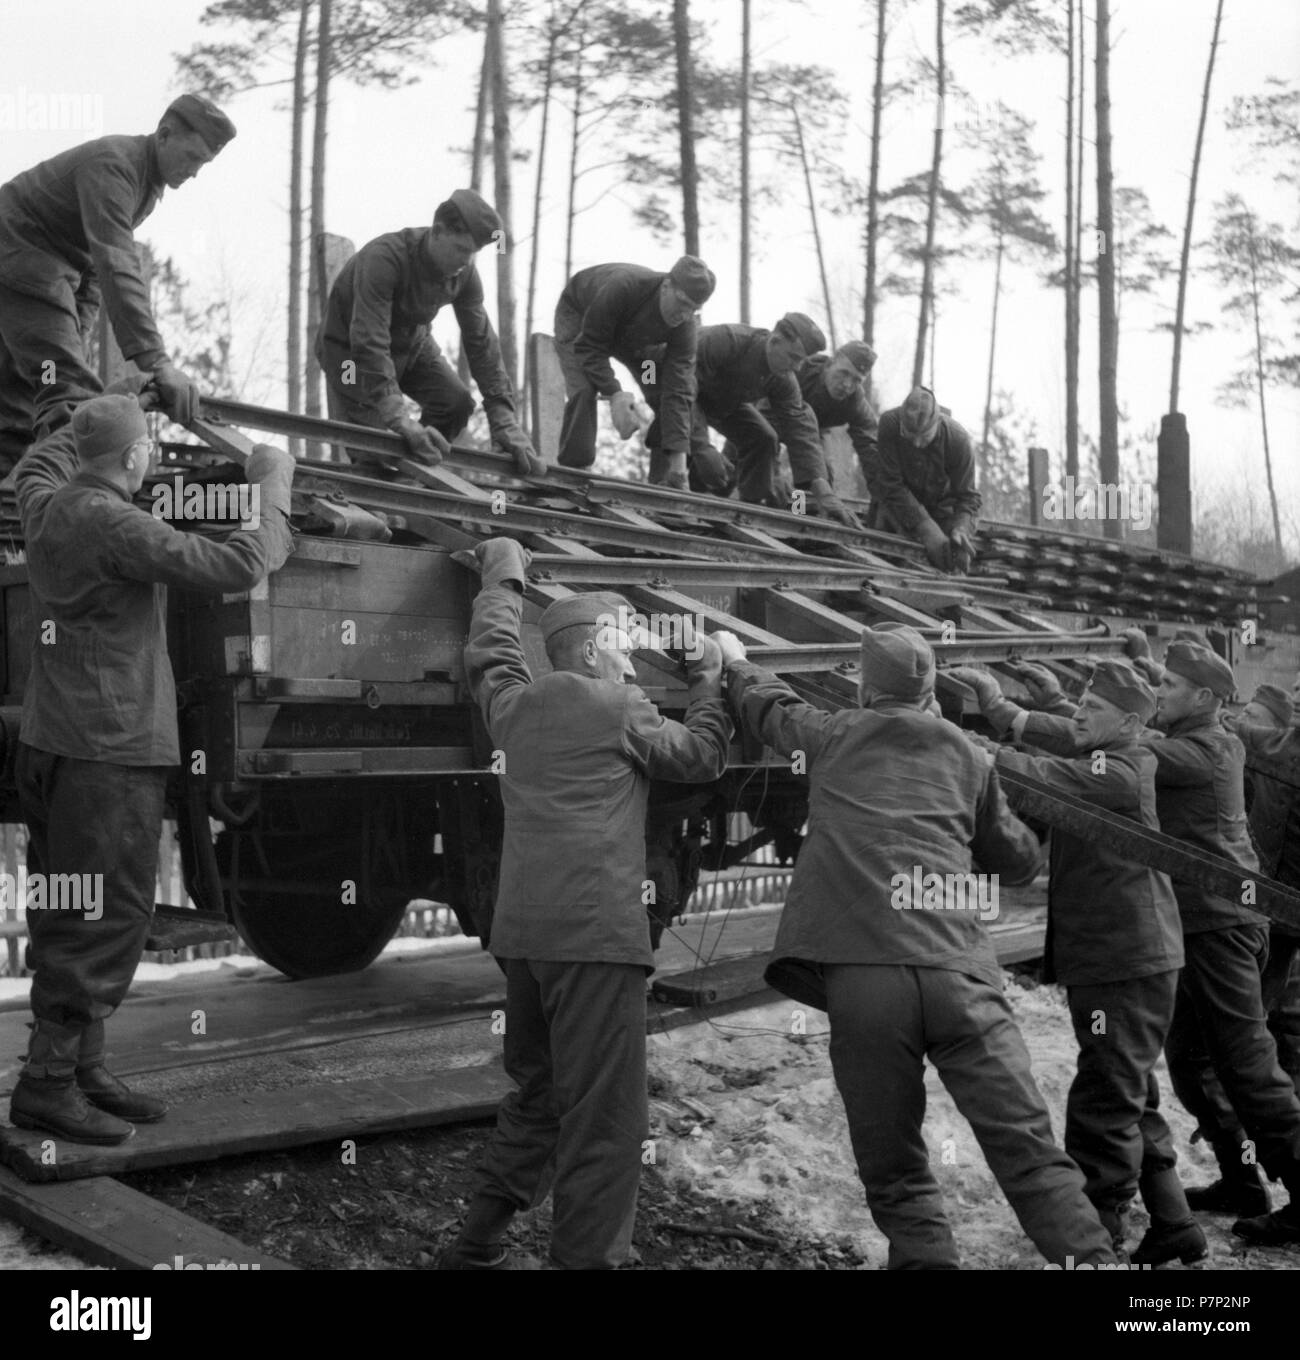 Env. 1939,1941, la formation des soldats de la Wehrmacht, rail de levage pièces détachées sur un chariot, Ulm, Allemagne Banque D'Images